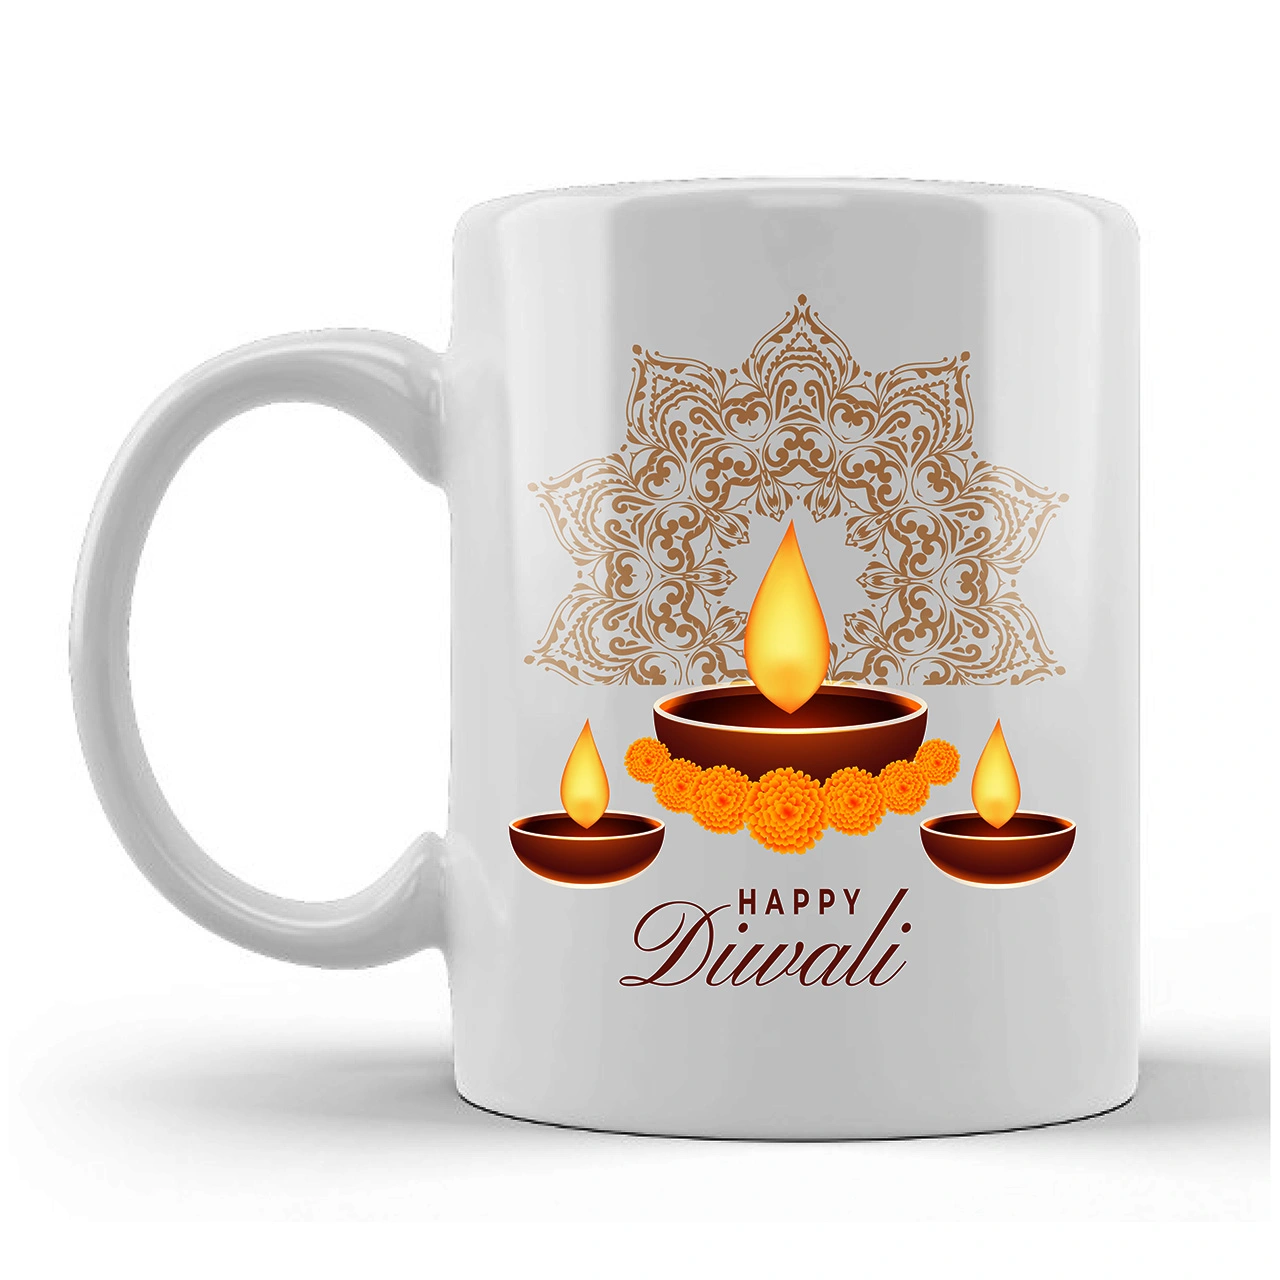 Happy Diwali Printed Ceramic Mug Gifts for Diwali Gifts Diwali Gift Items Diwali Gifts for Frie